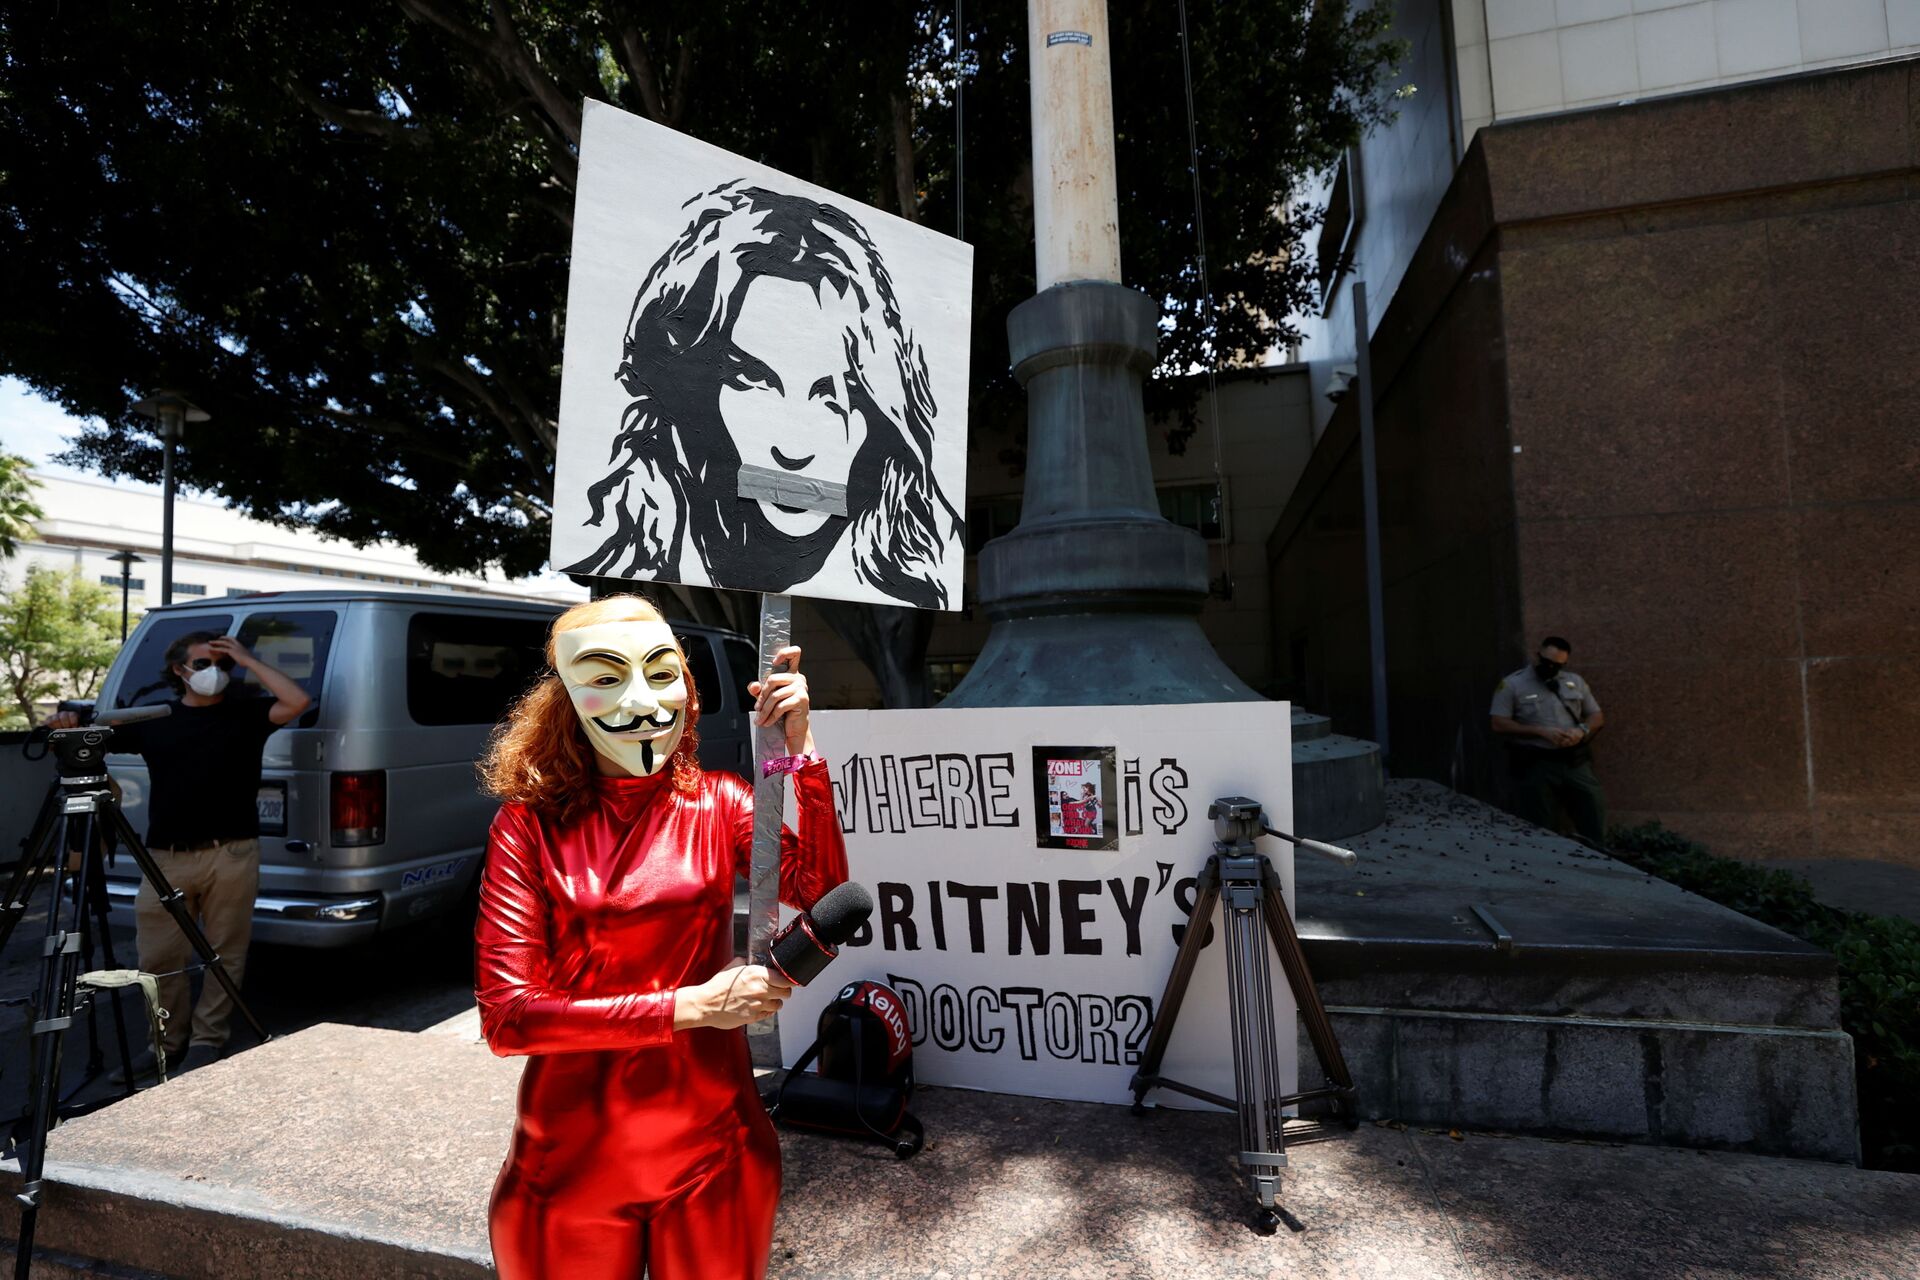 Габриэла Руис держит плакат протеста в поддержку поп-звезды Бритни Спирс в Лос-Анджелесе - Sputnik Грузия, 1920, 24.08.2021